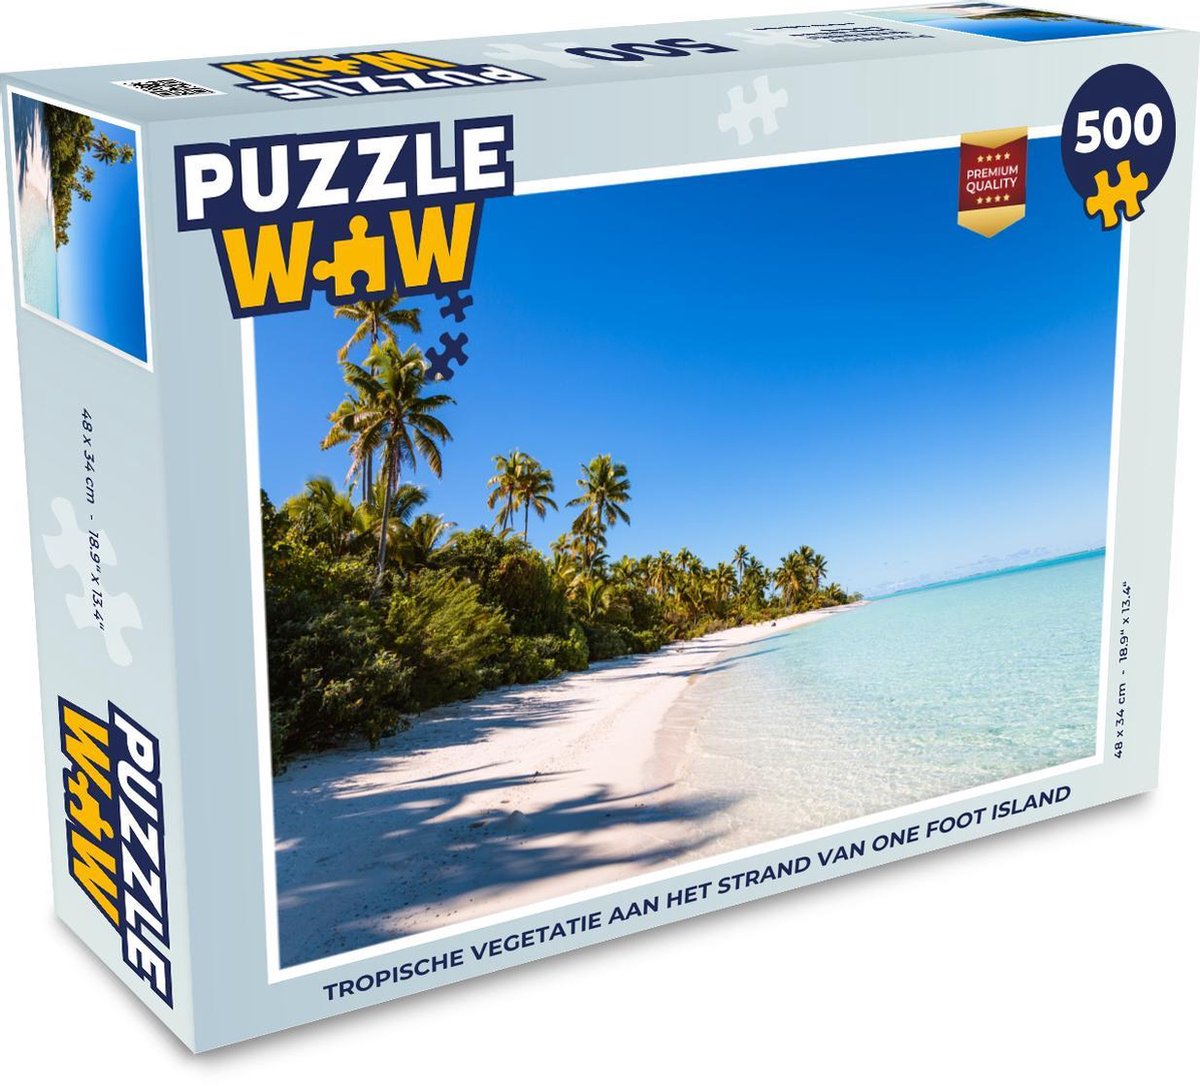 Afbeelding van product Puzzel 500 stukjes One Foot Island - Tropische vegetatie aan het strand van One Foot Island - PuzzleWow heeft +100000 puzzels